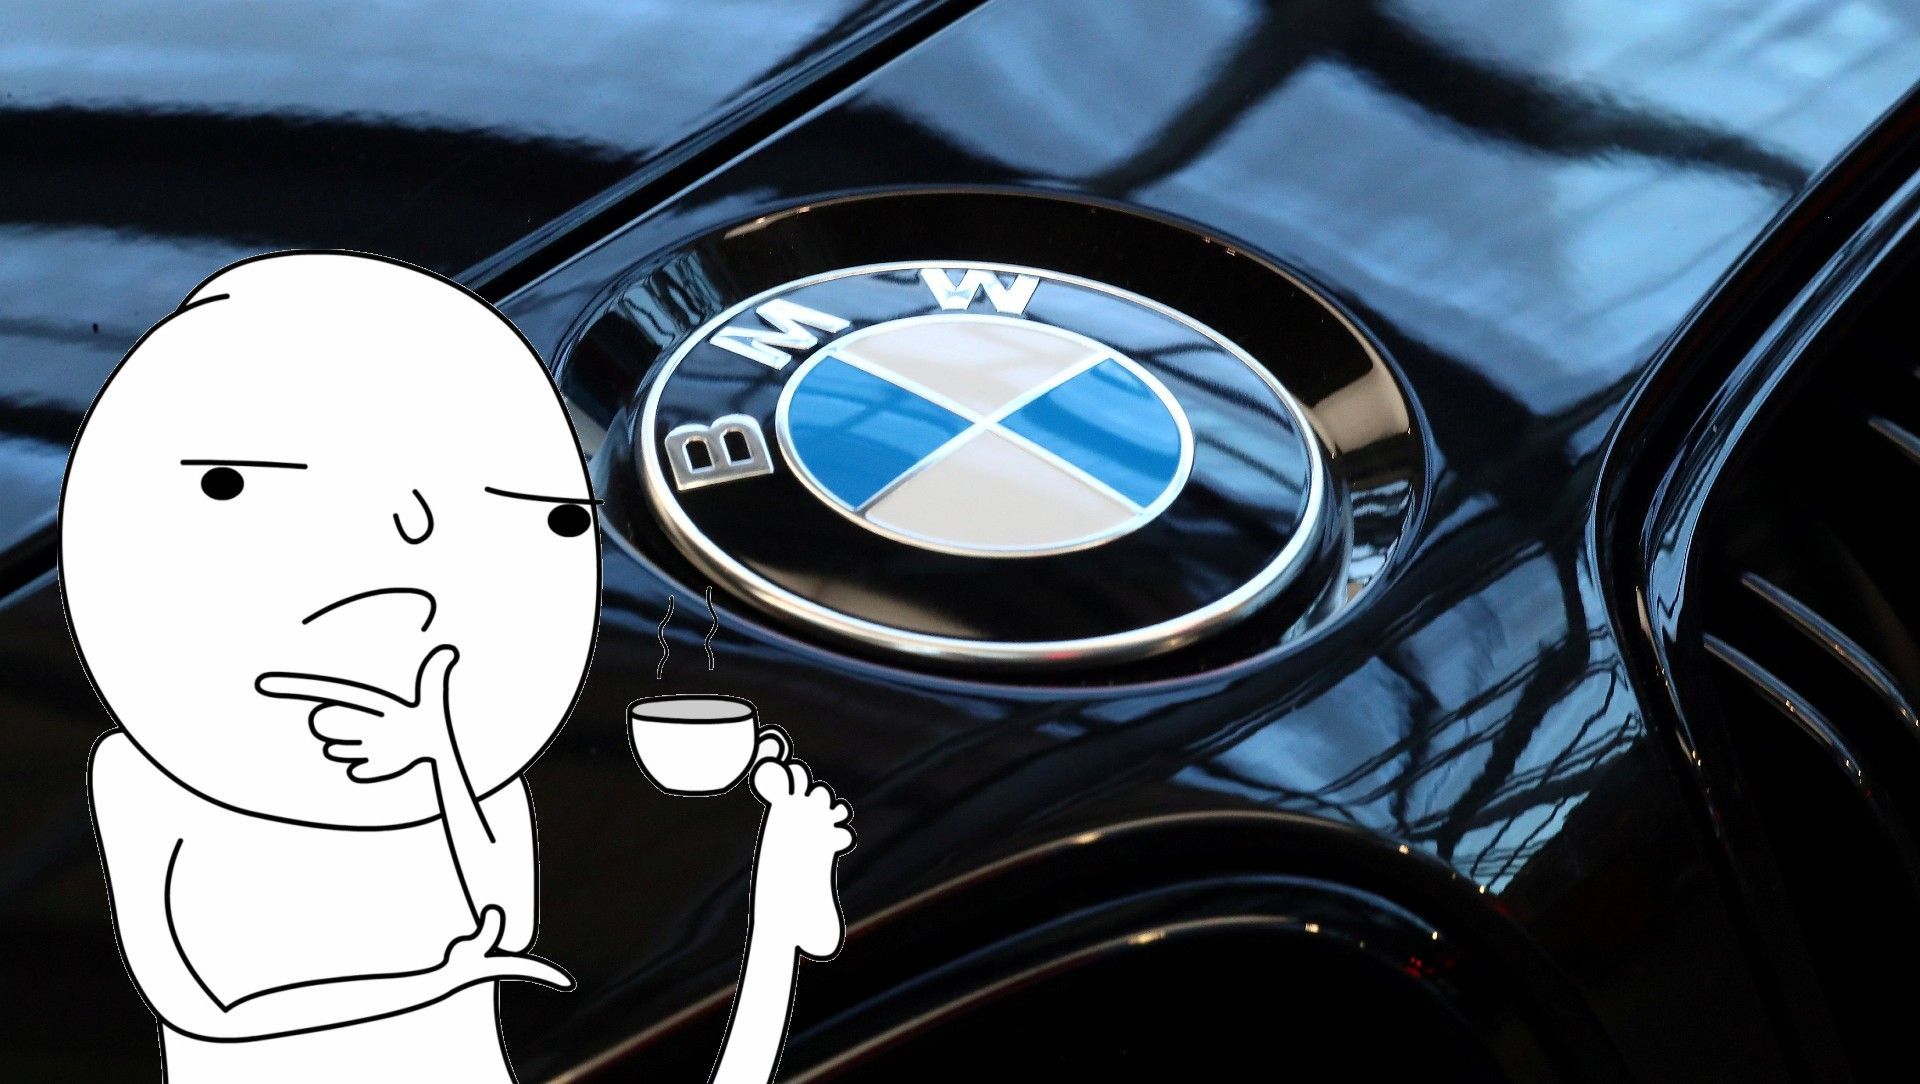 Qué significa el logo de BMW? ¿Y los números y letras de sus modelos de  coche? - Vandal Random